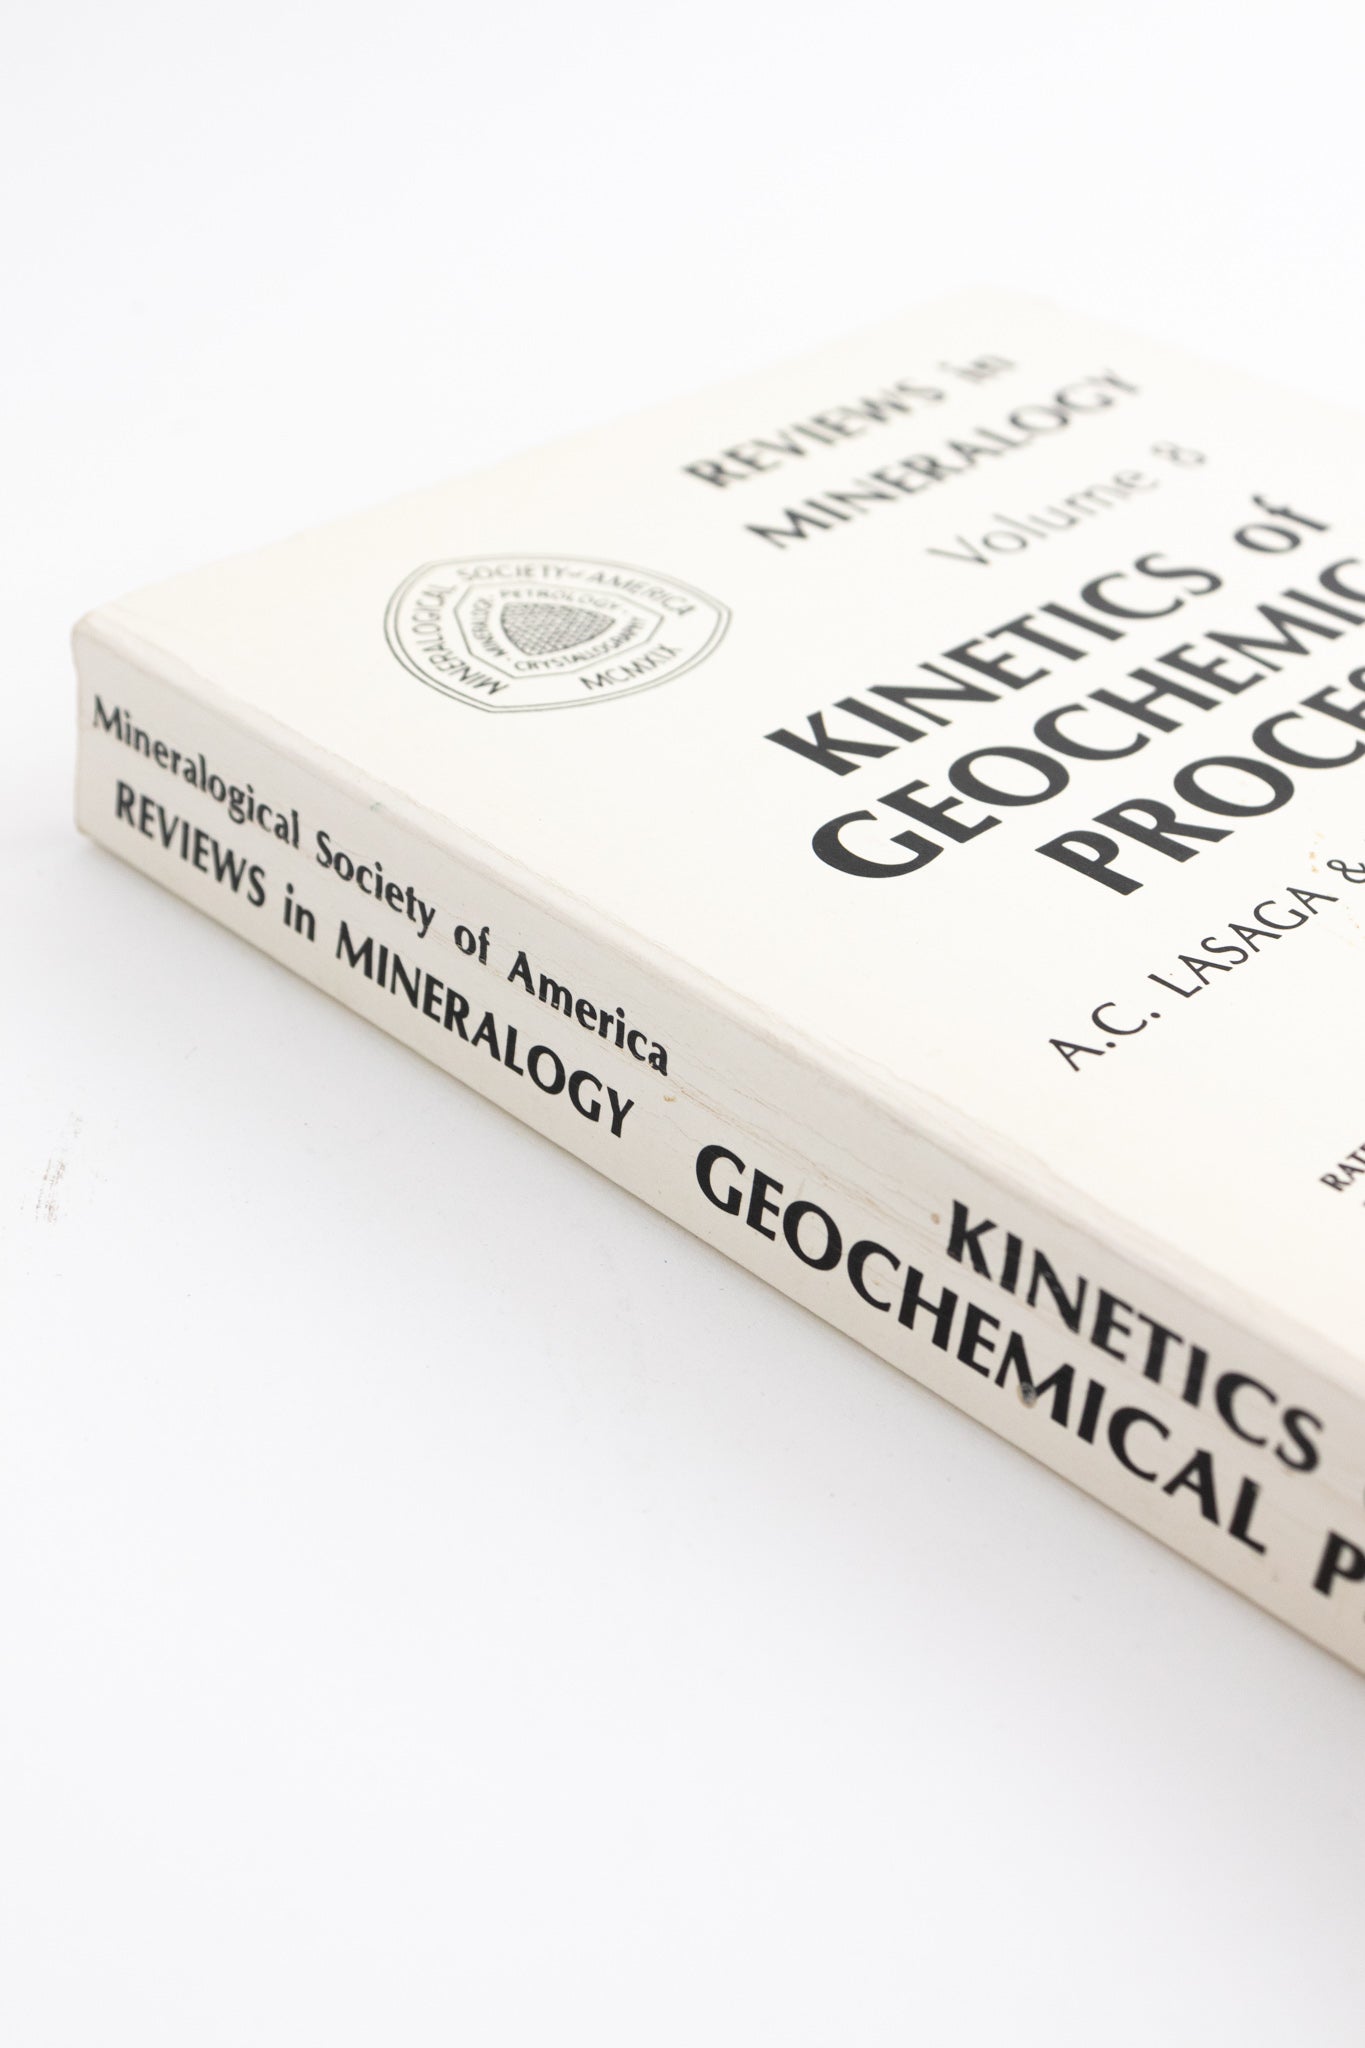 Kinetics of Geochemical Processes